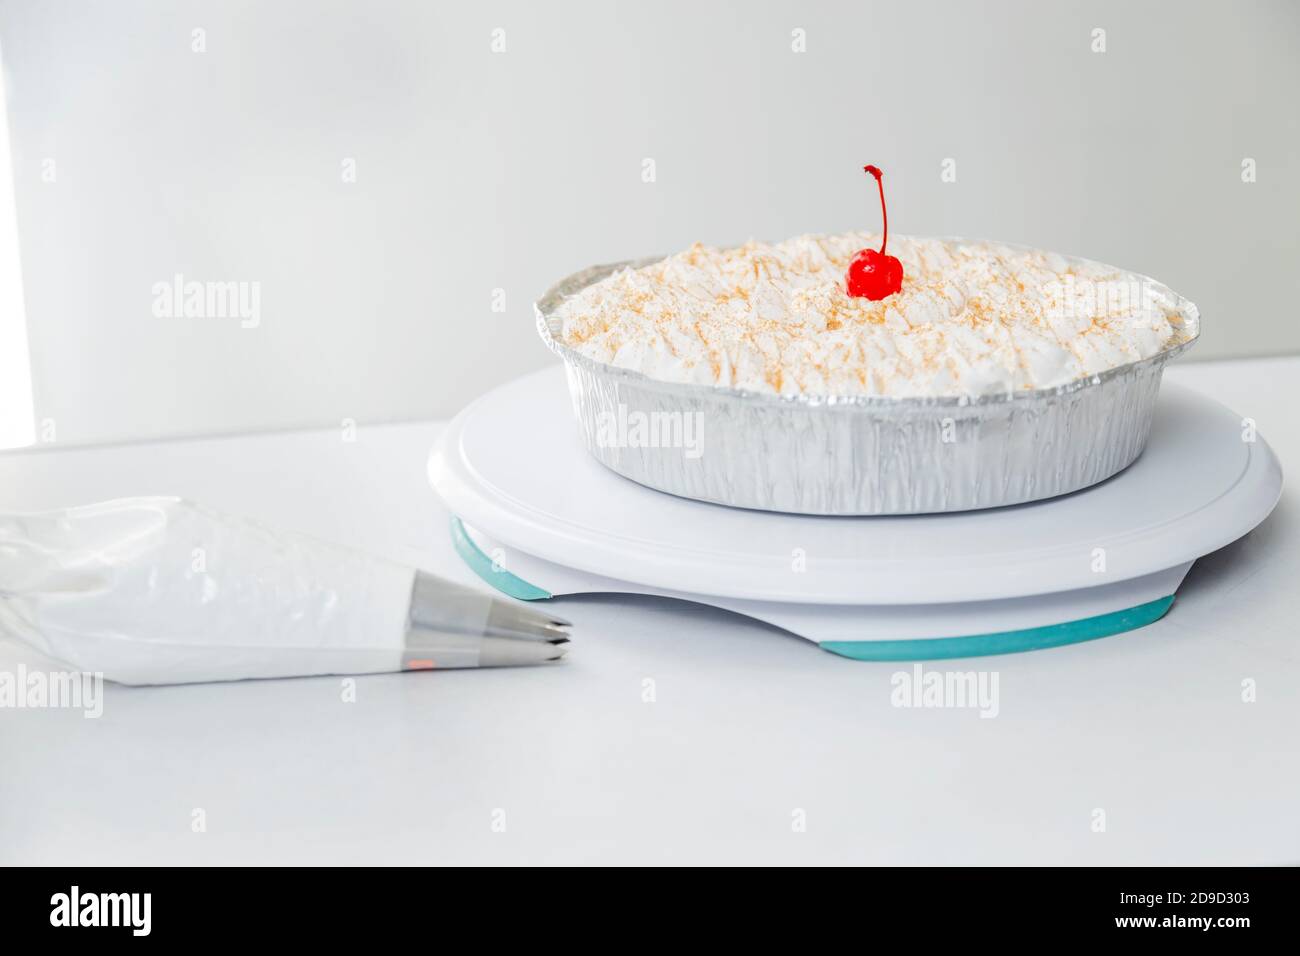 Deliziosa torta di tre latti su sfondo bianco - torta tradizionale dentro America Latina Foto Stock